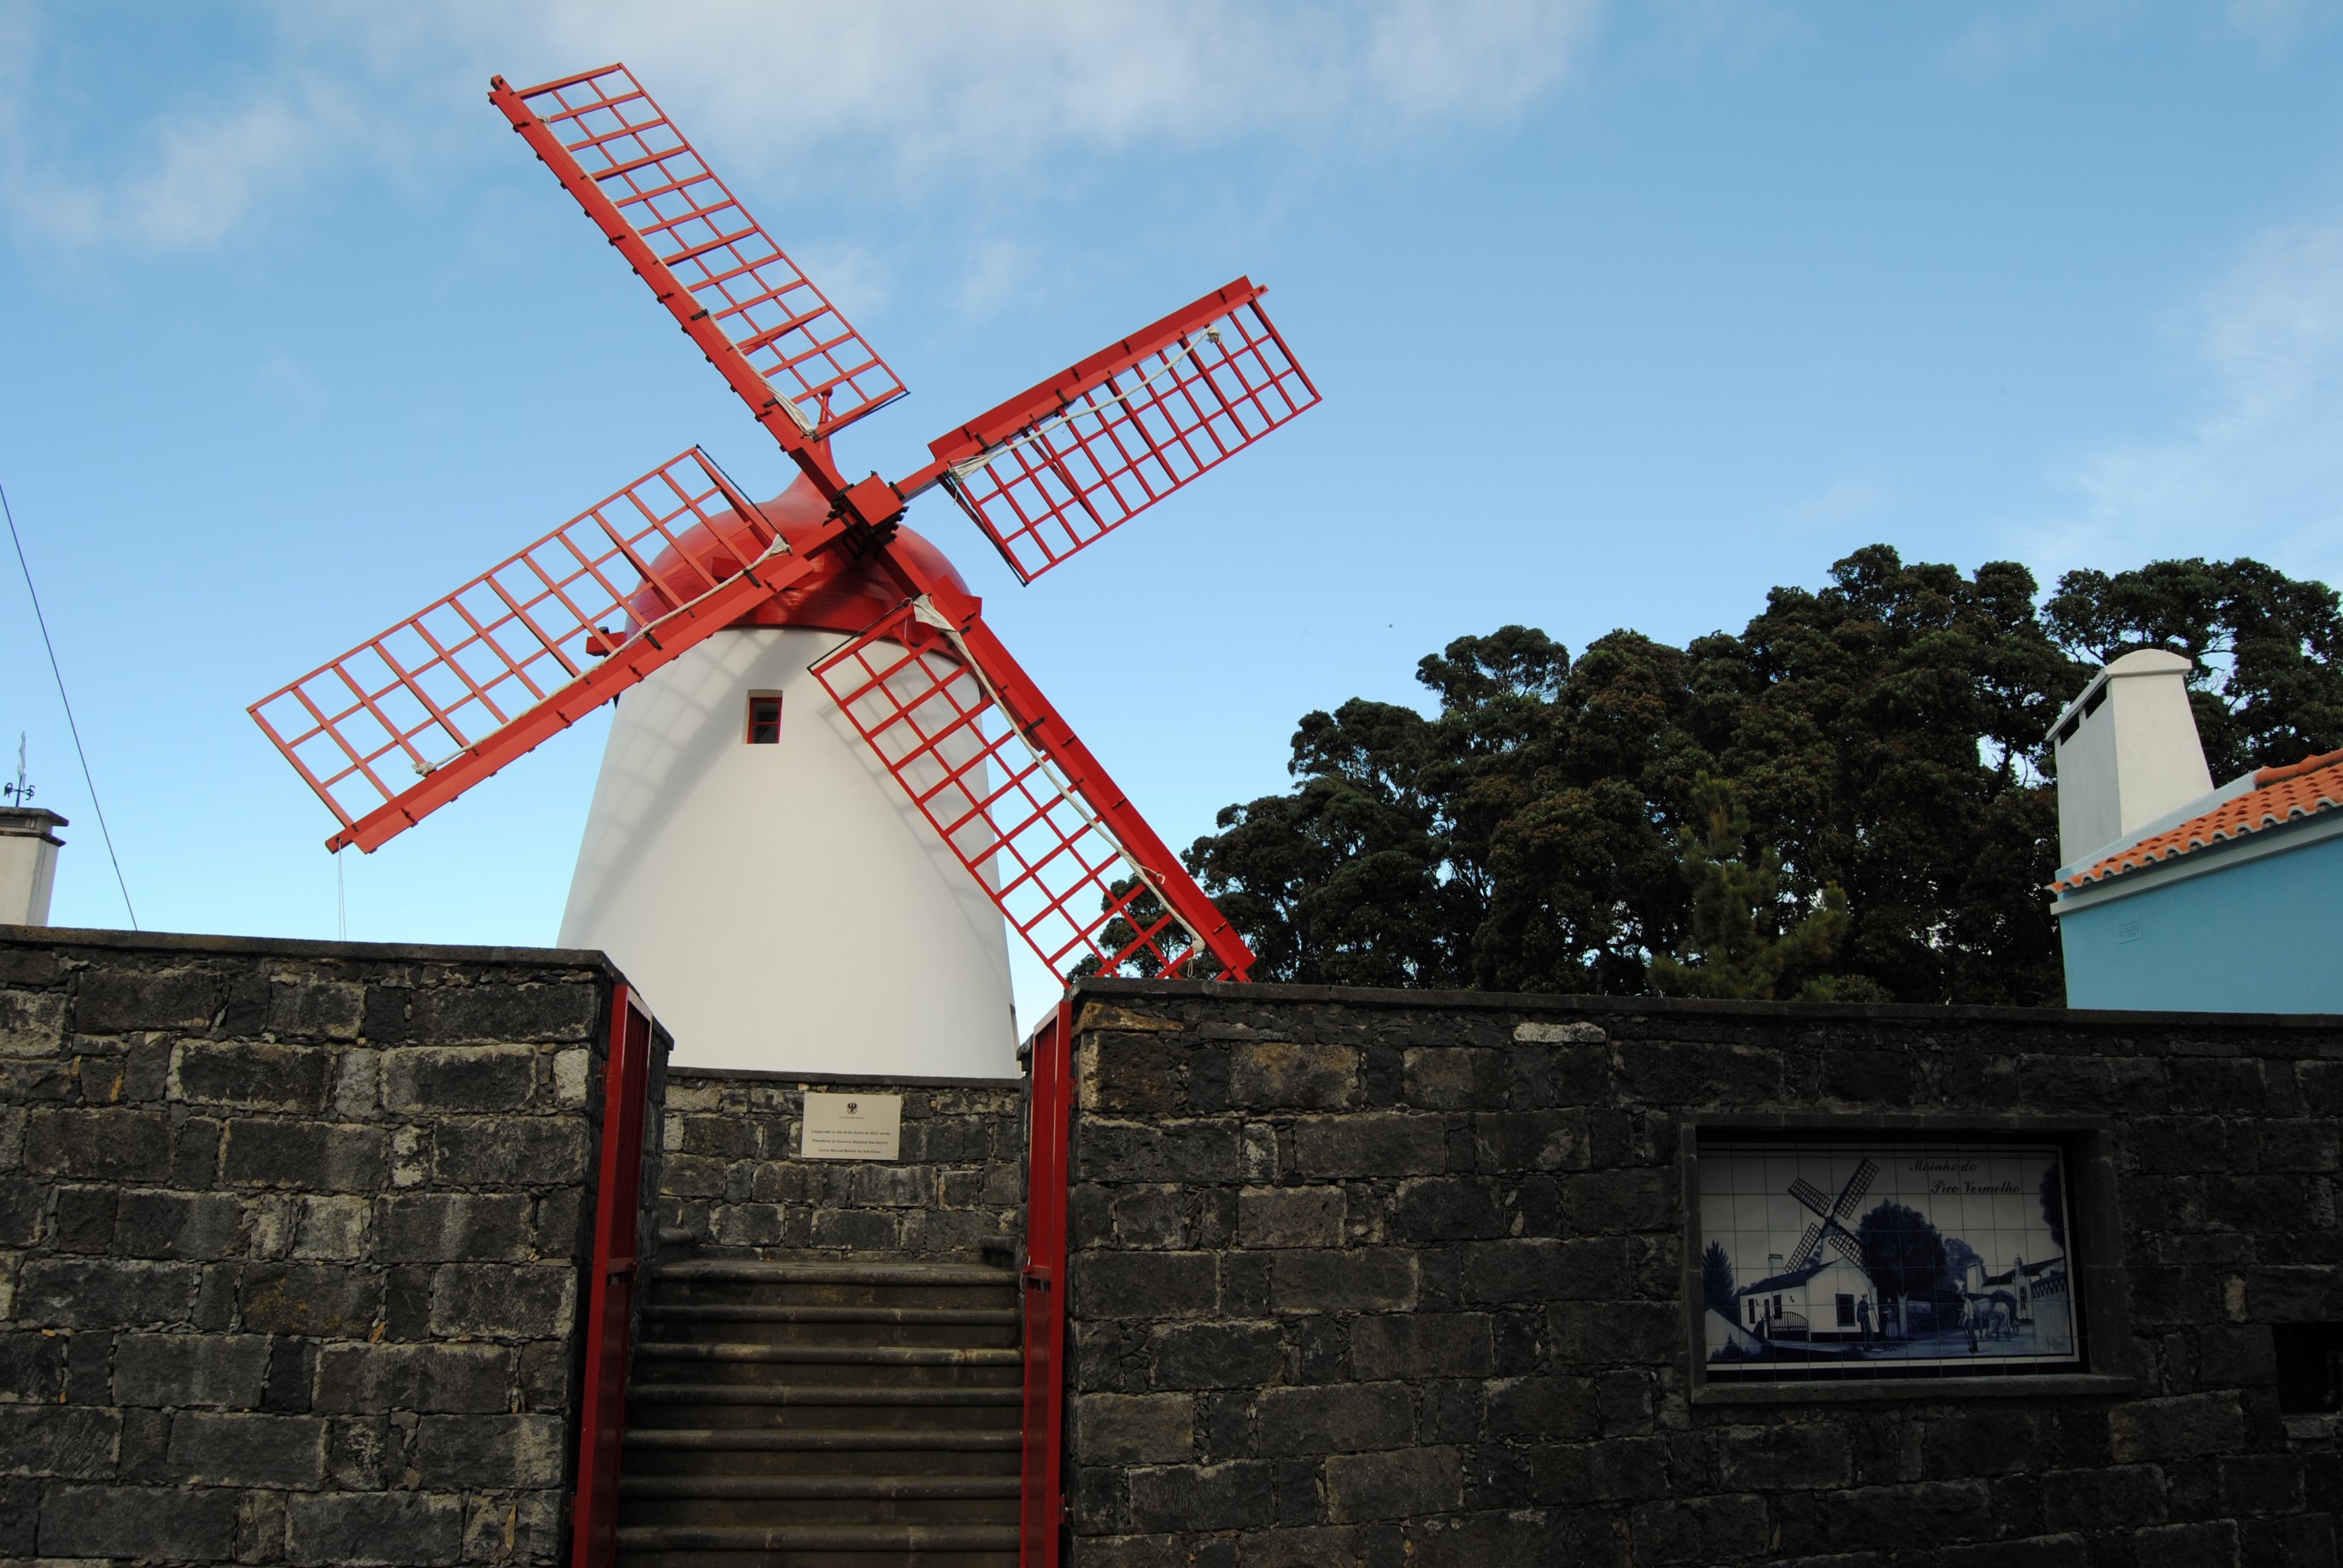 Bretanha windmill